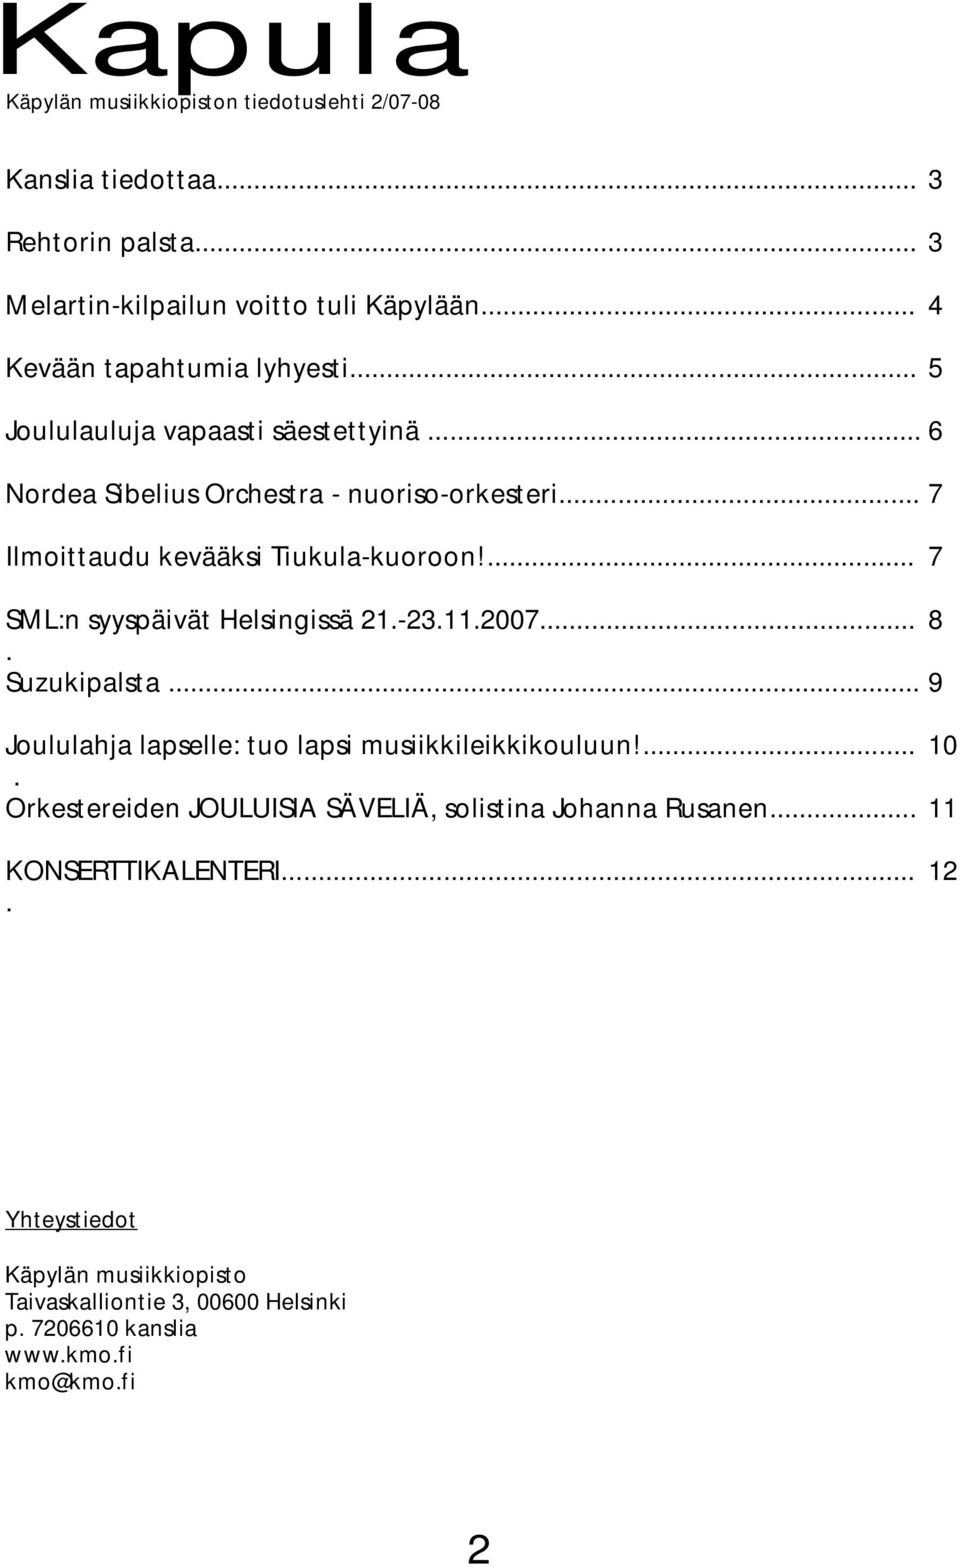 ... 7 SML:n syyspäivät Helsingissä 21.-23.11.2007... 8. Suzukipalsta... 9 Joululahja lapselle: tuo lapsi musiikkileikkikouluun!